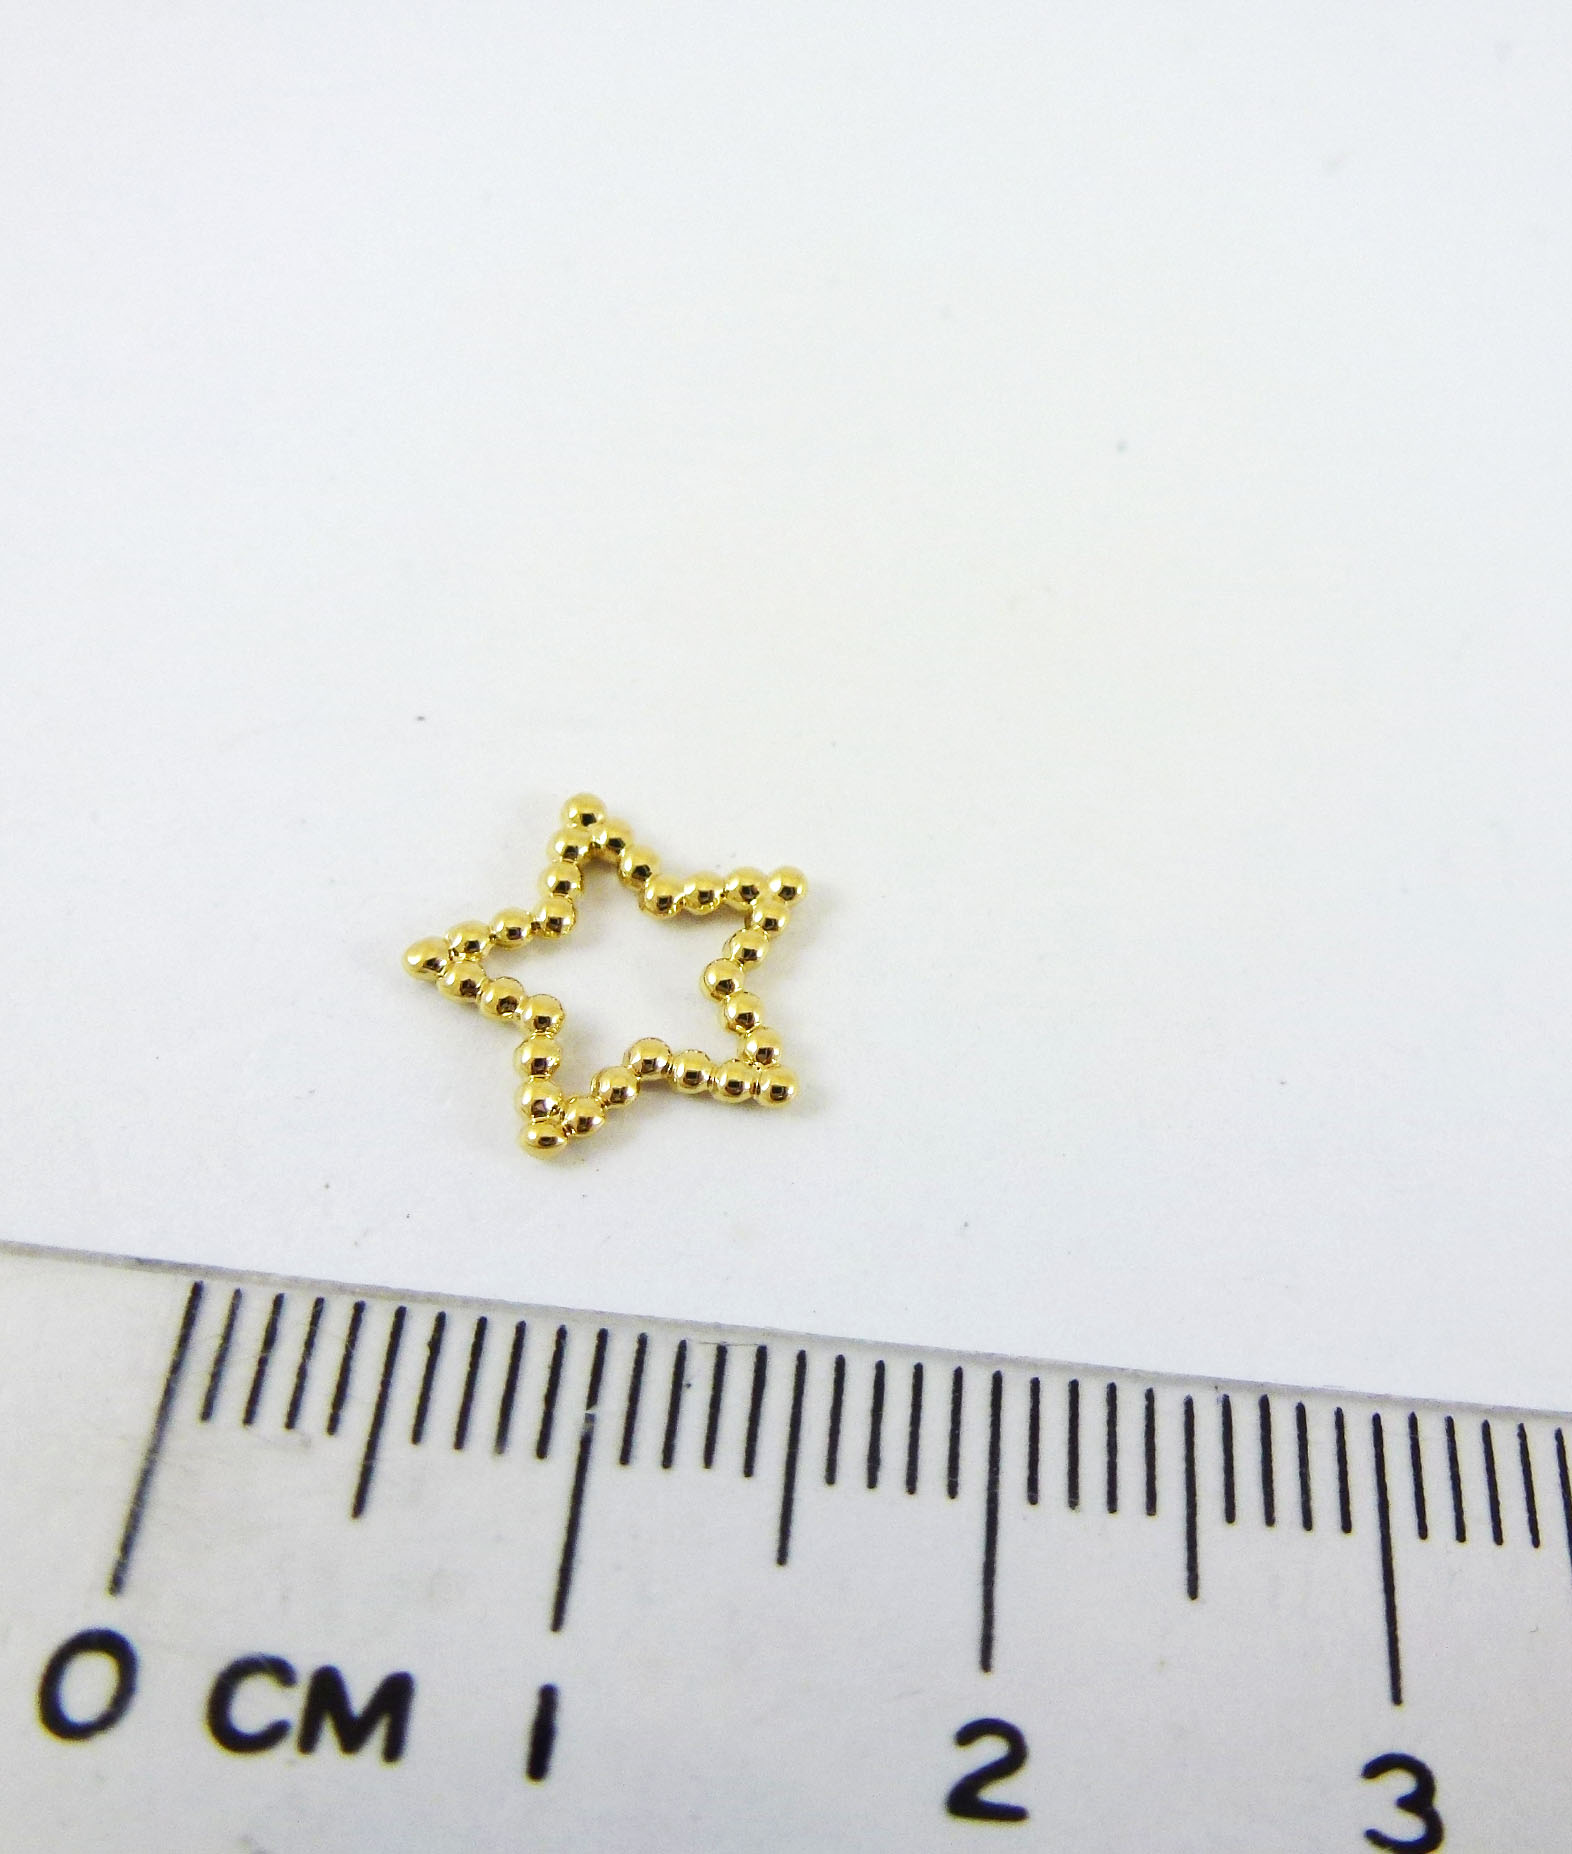 11MM銅鍍金色珠鍊框星星